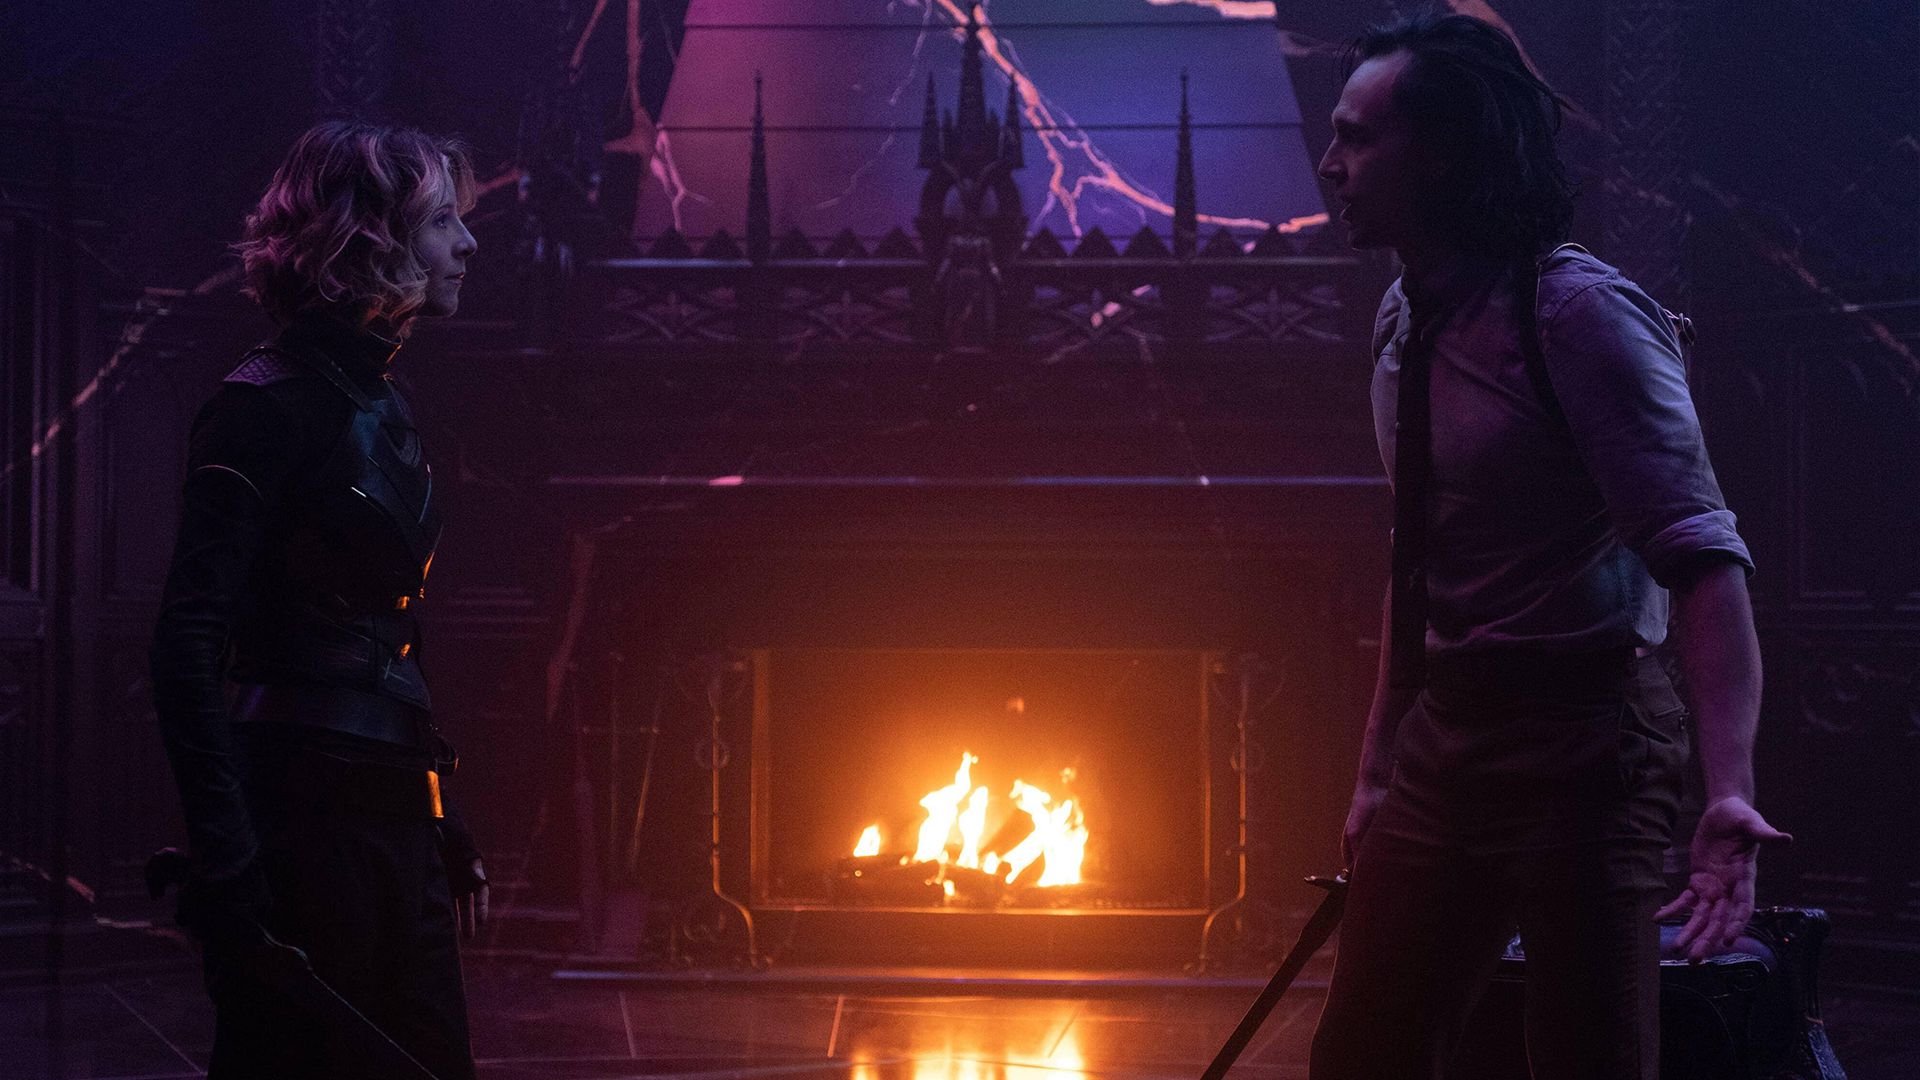 تام هیدلستون در نقش لوکی و سوفیا دی مارتینو در نقش سیلوی در حال مبارزه با یکدیگر در قسمت ششم سریال Loki 